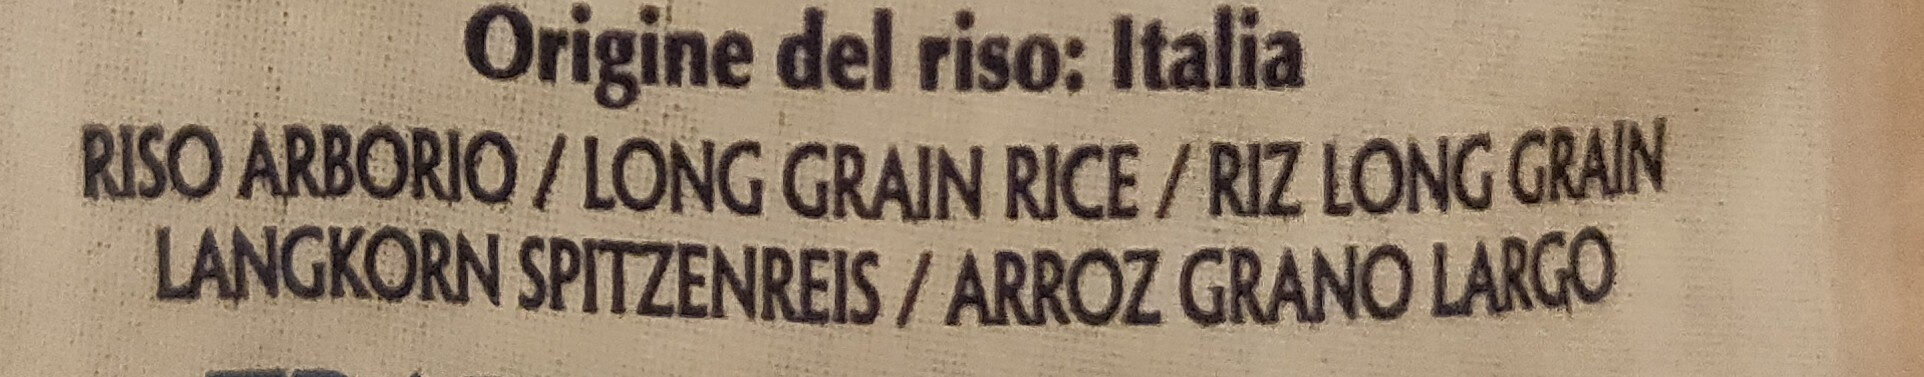 Riso Superfino Arborio - Ingredients - it